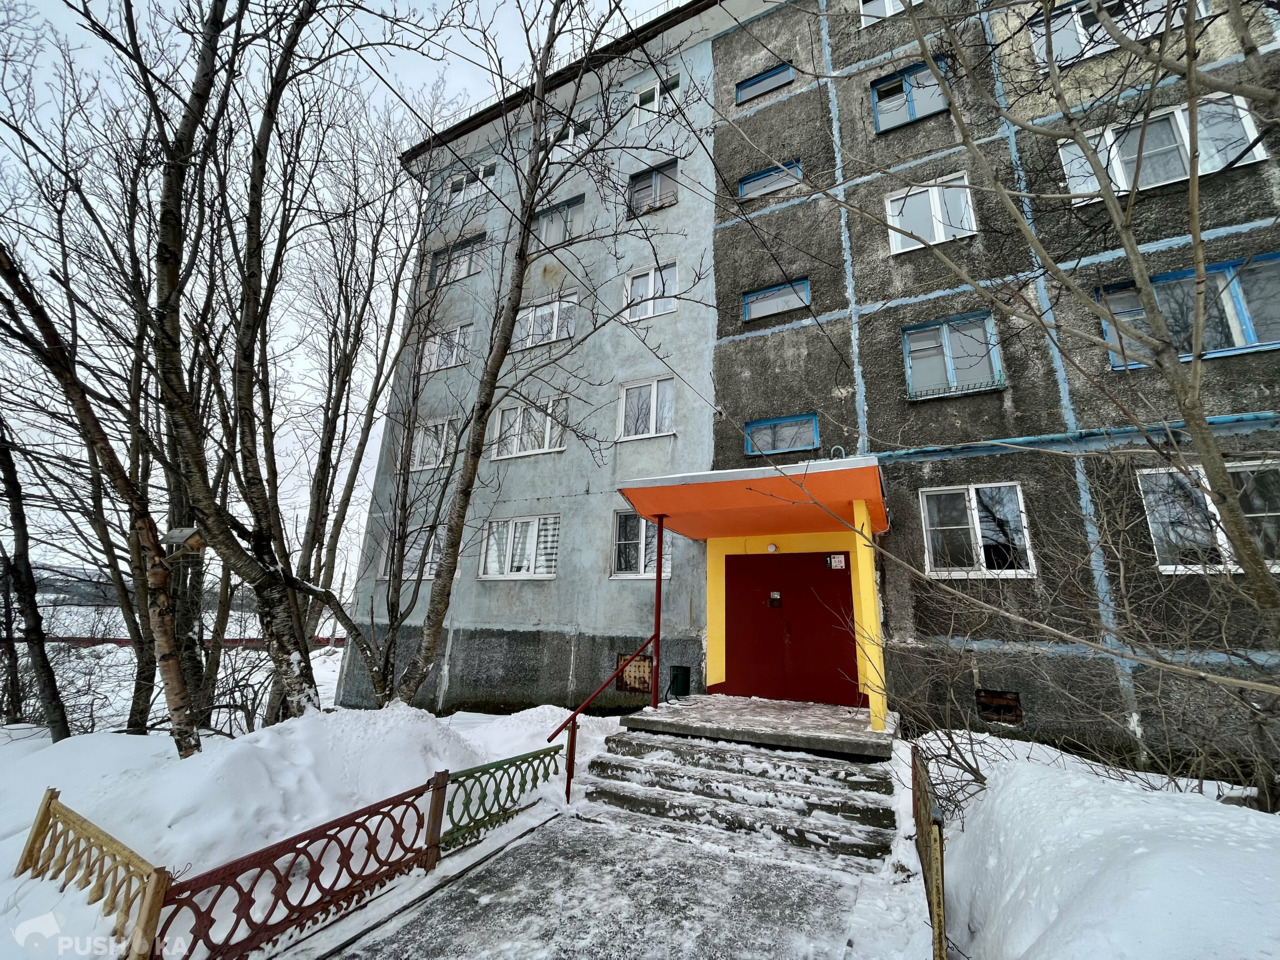 Продаётся 3-комнатная комната 61.0 кв.м. этаж 2/5 за 1 150 000 руб 